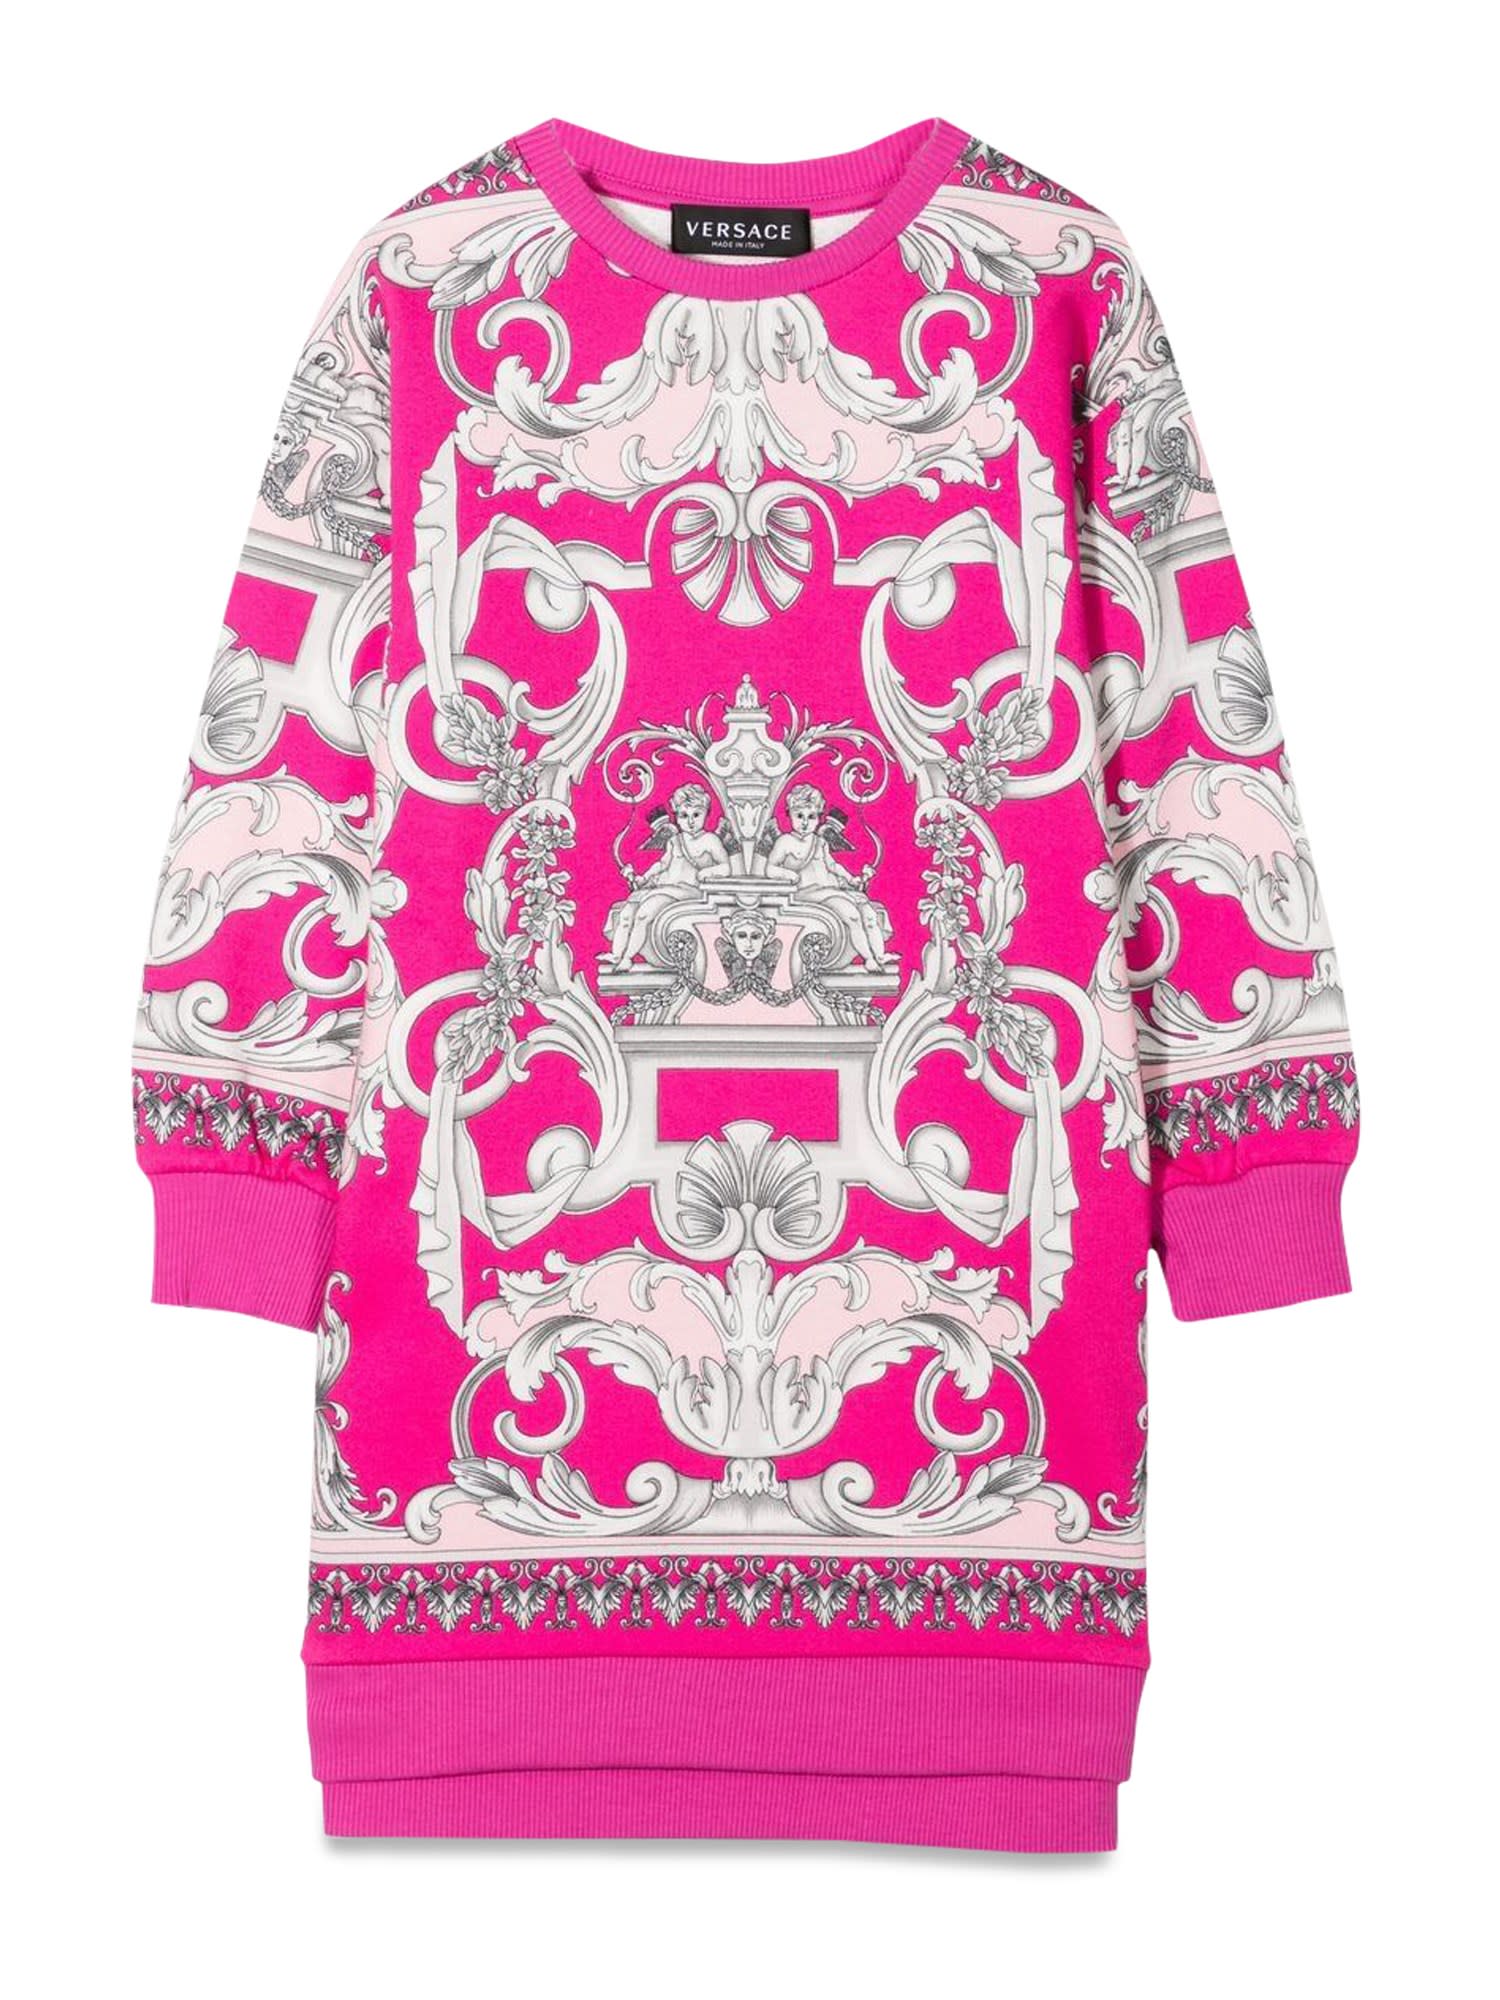 Versace Baroque Sweatshirt Dress